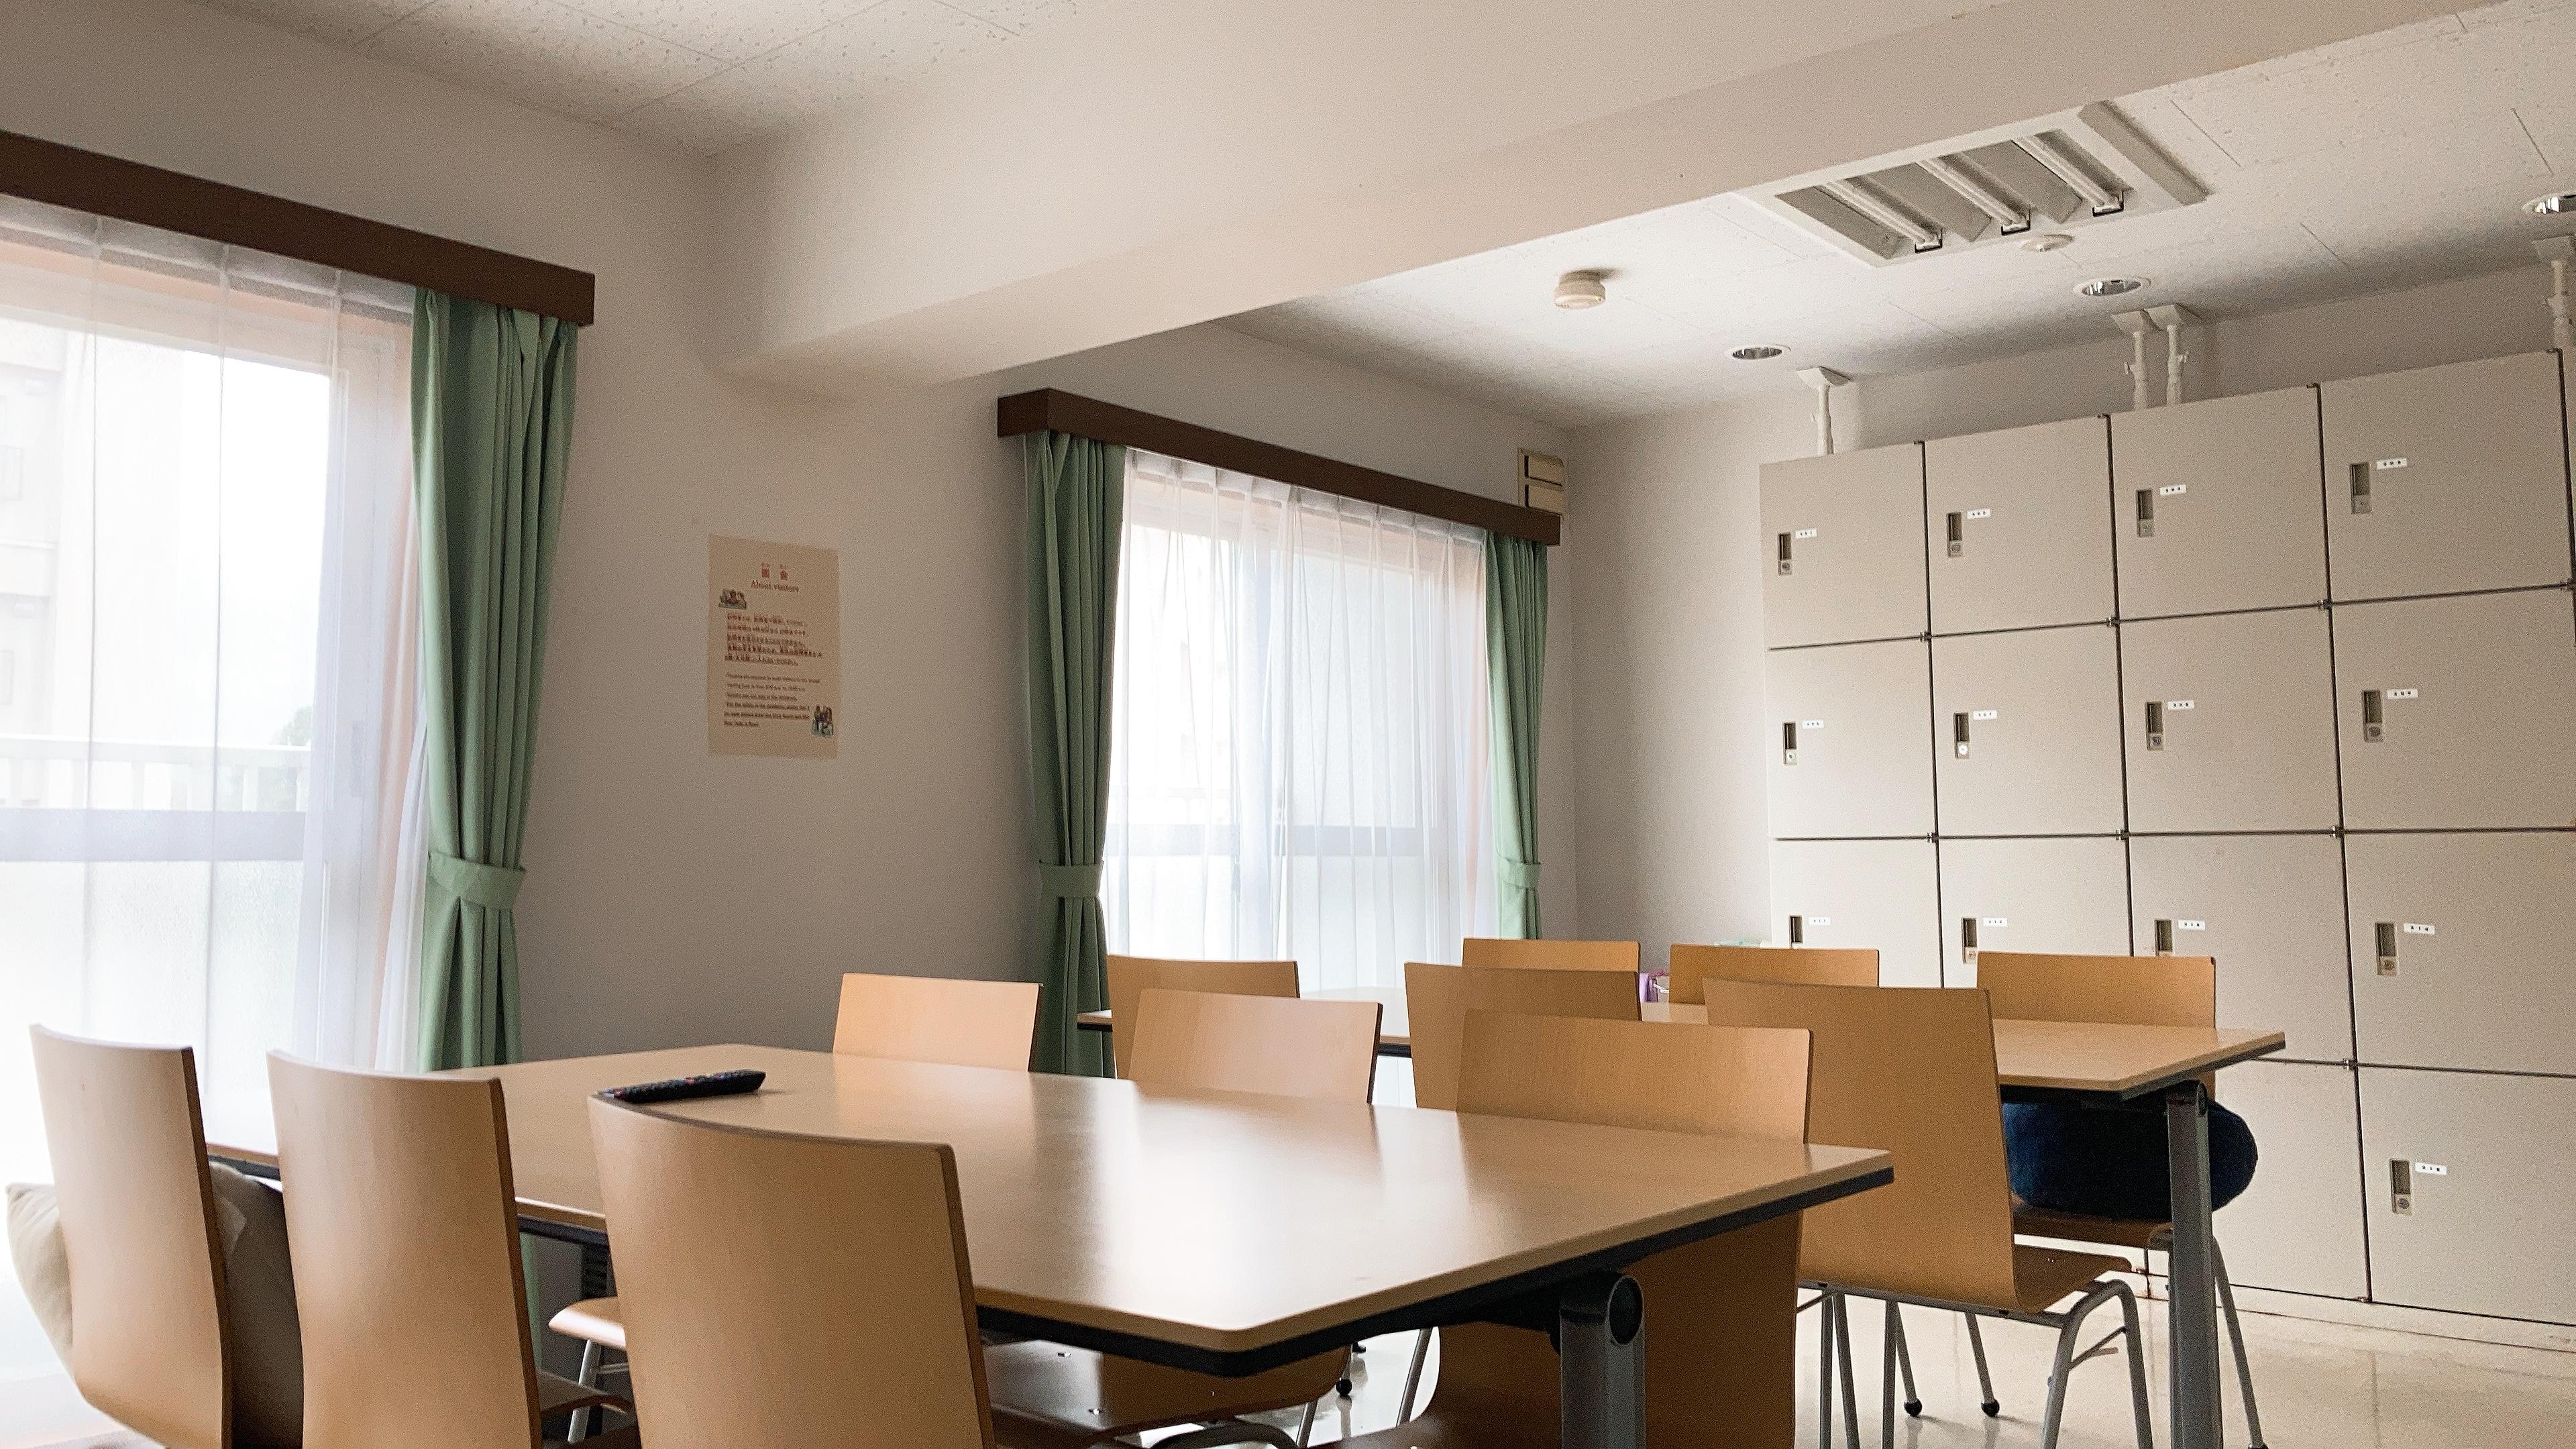 因为住的是北海道大学的学生宿舍,所以房租比较便宜,八月房租22000